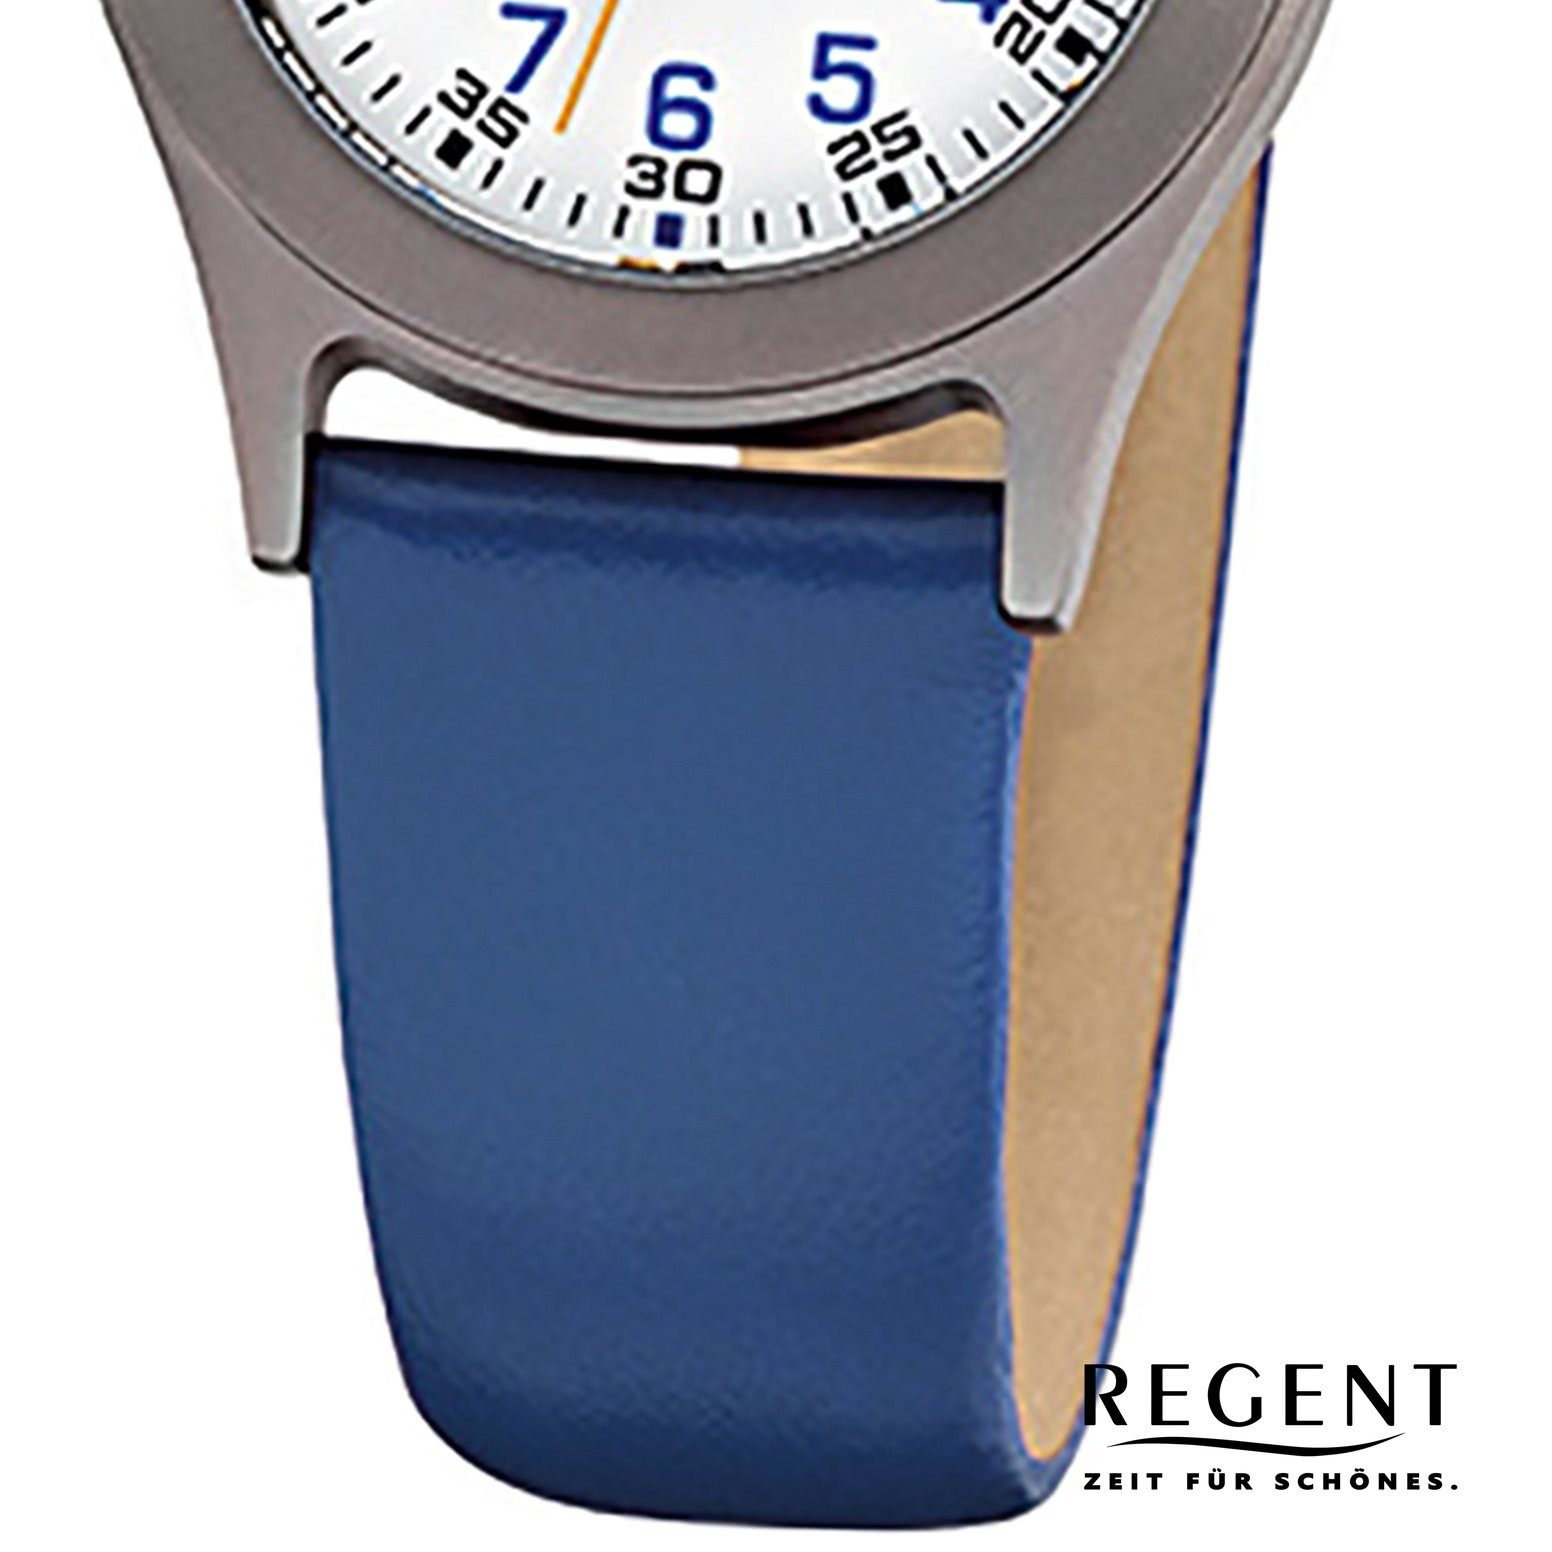 (ca. Kinder Armbanduhr rund, Analog klein Quarzuhr Kinder-Armbanduhr Regent F-947, Lederarmband Regent blau 26mm),